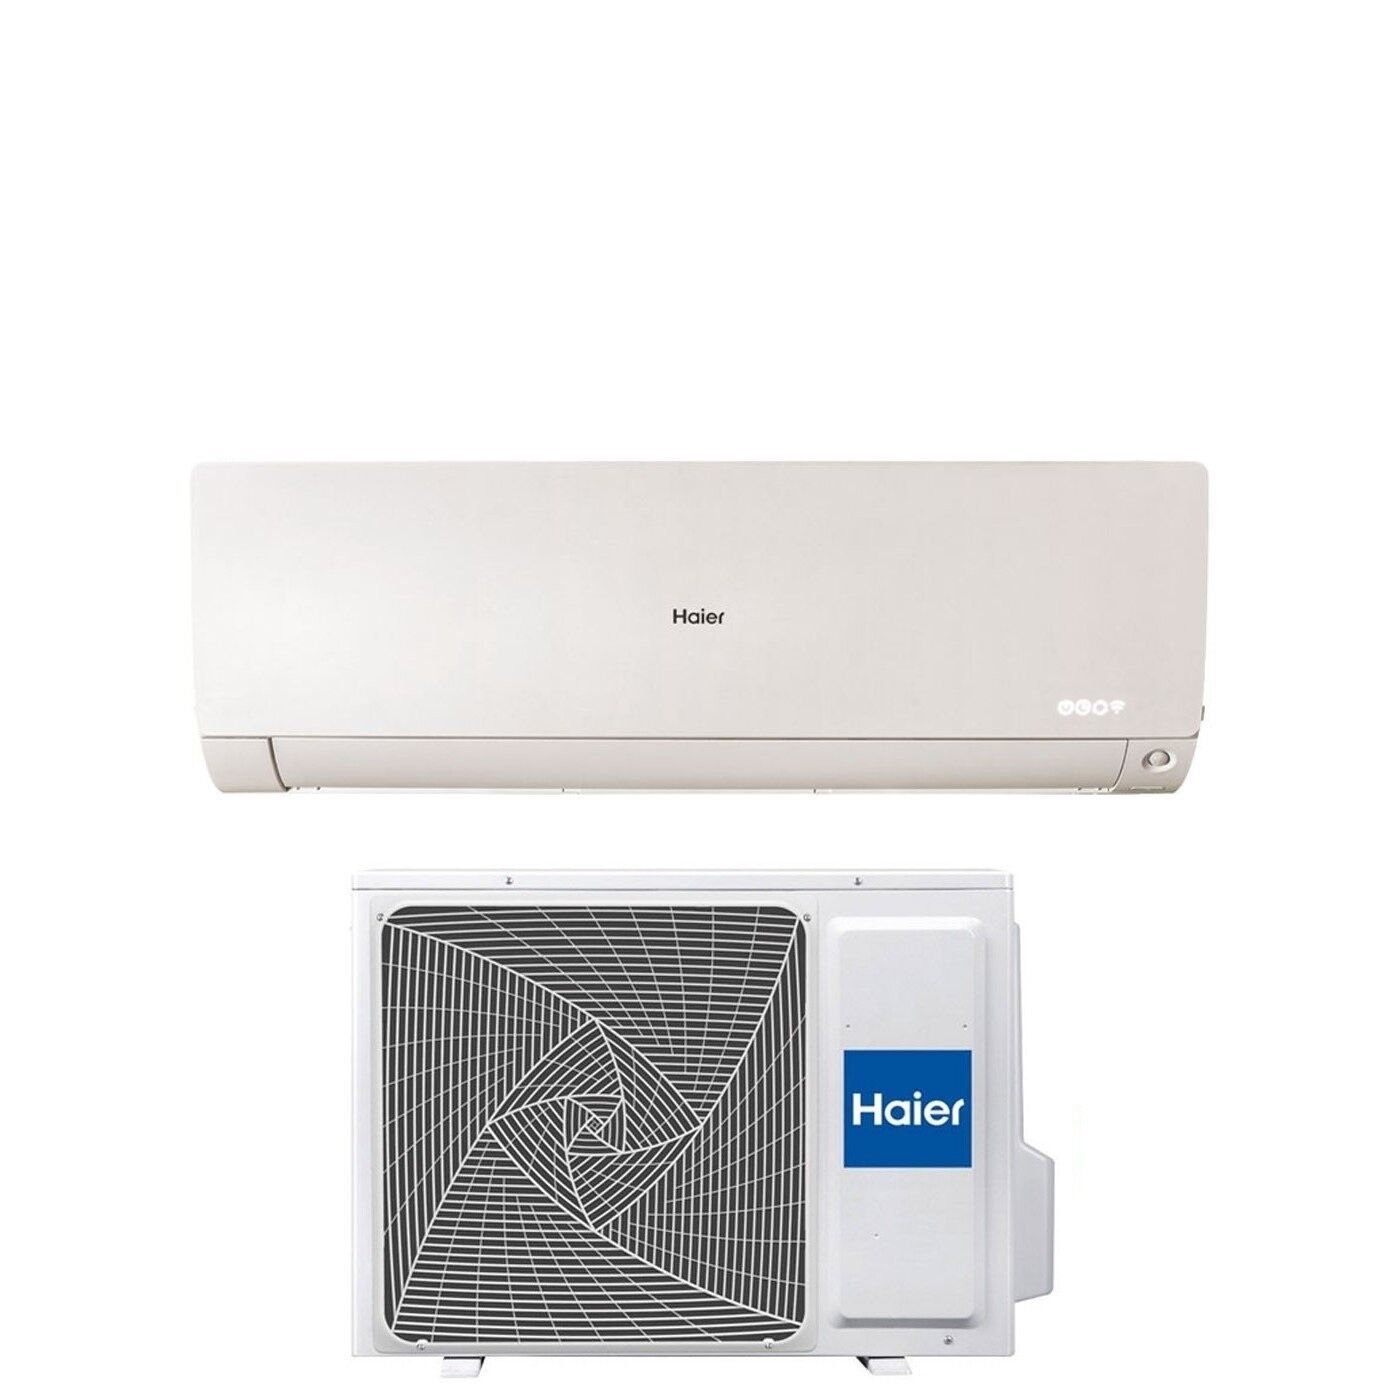 HAIER Climatizzatore Condizionatore Haier Inverter Serie Flexis Plus White 9000 Btu As25s2sf1fa-Mw3 R-32 Wi-Fi Integrato Classe A+++/a++ Colore Bianco